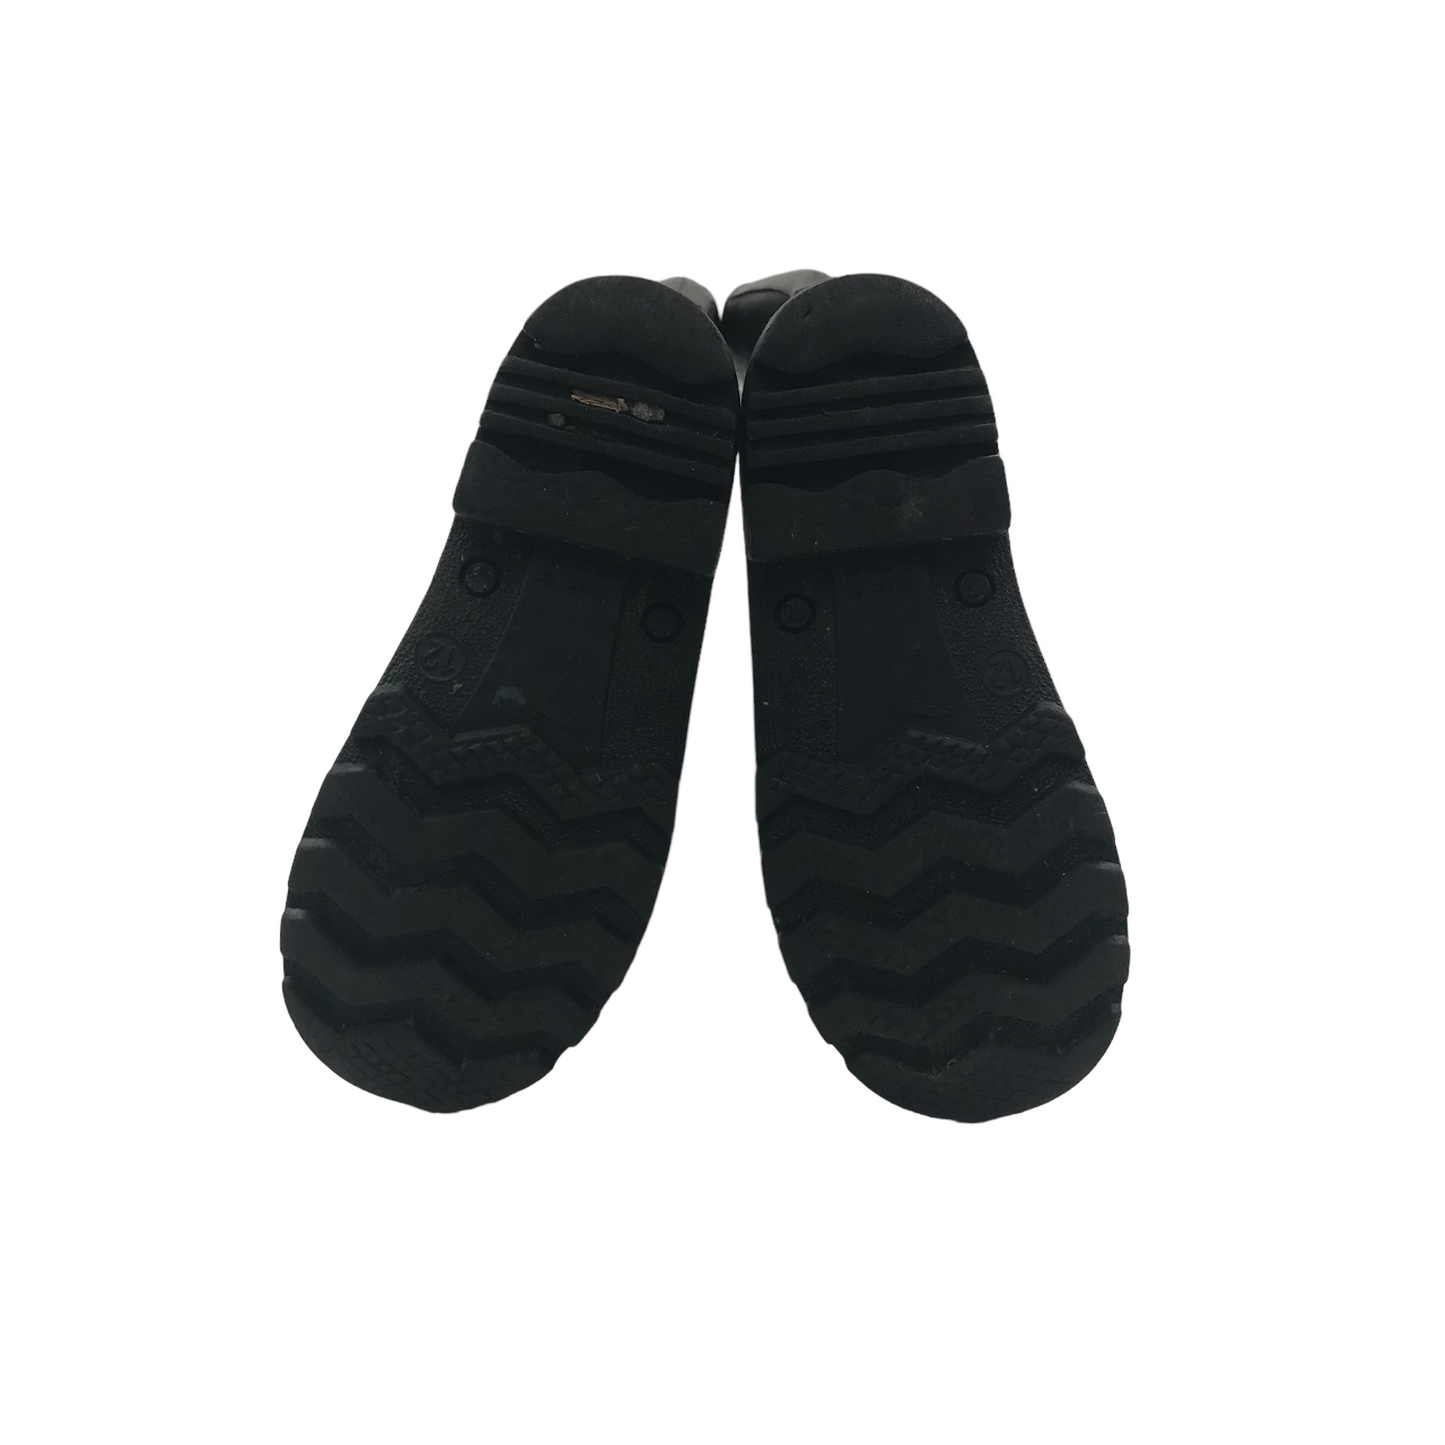 Black Plain Wellies Shoe Size 12 junior